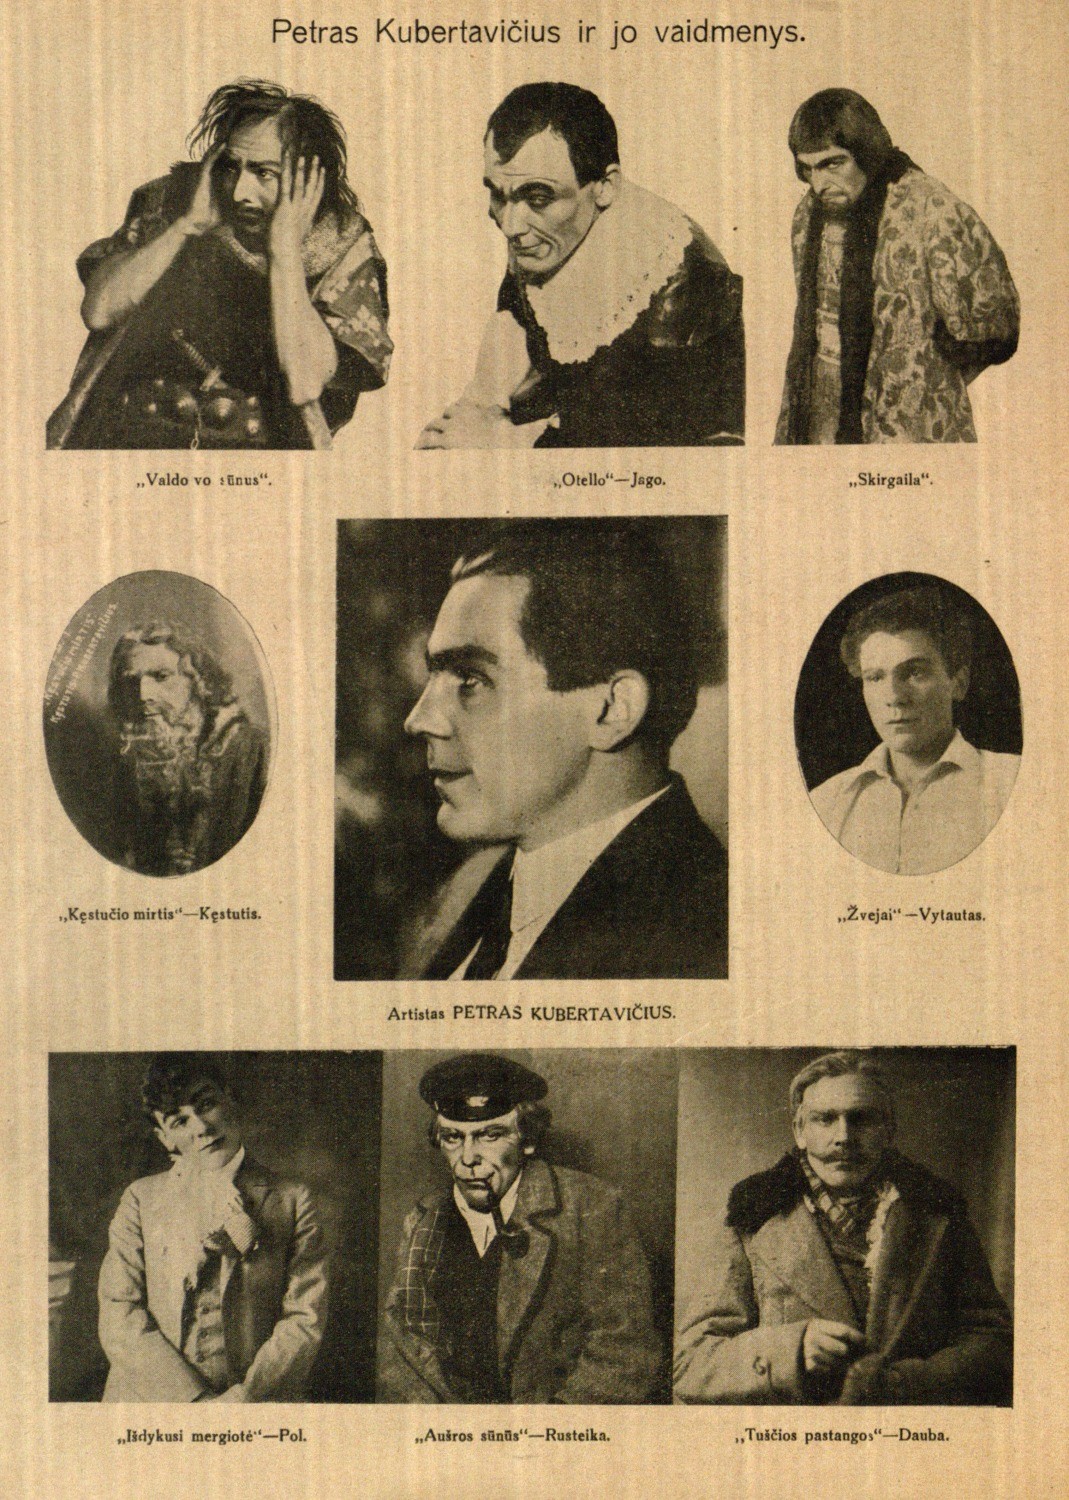 Petras Kubertavičius ir jo vaidmenys // Naujas žodis. – 1927, Nr. 9, p. 6.